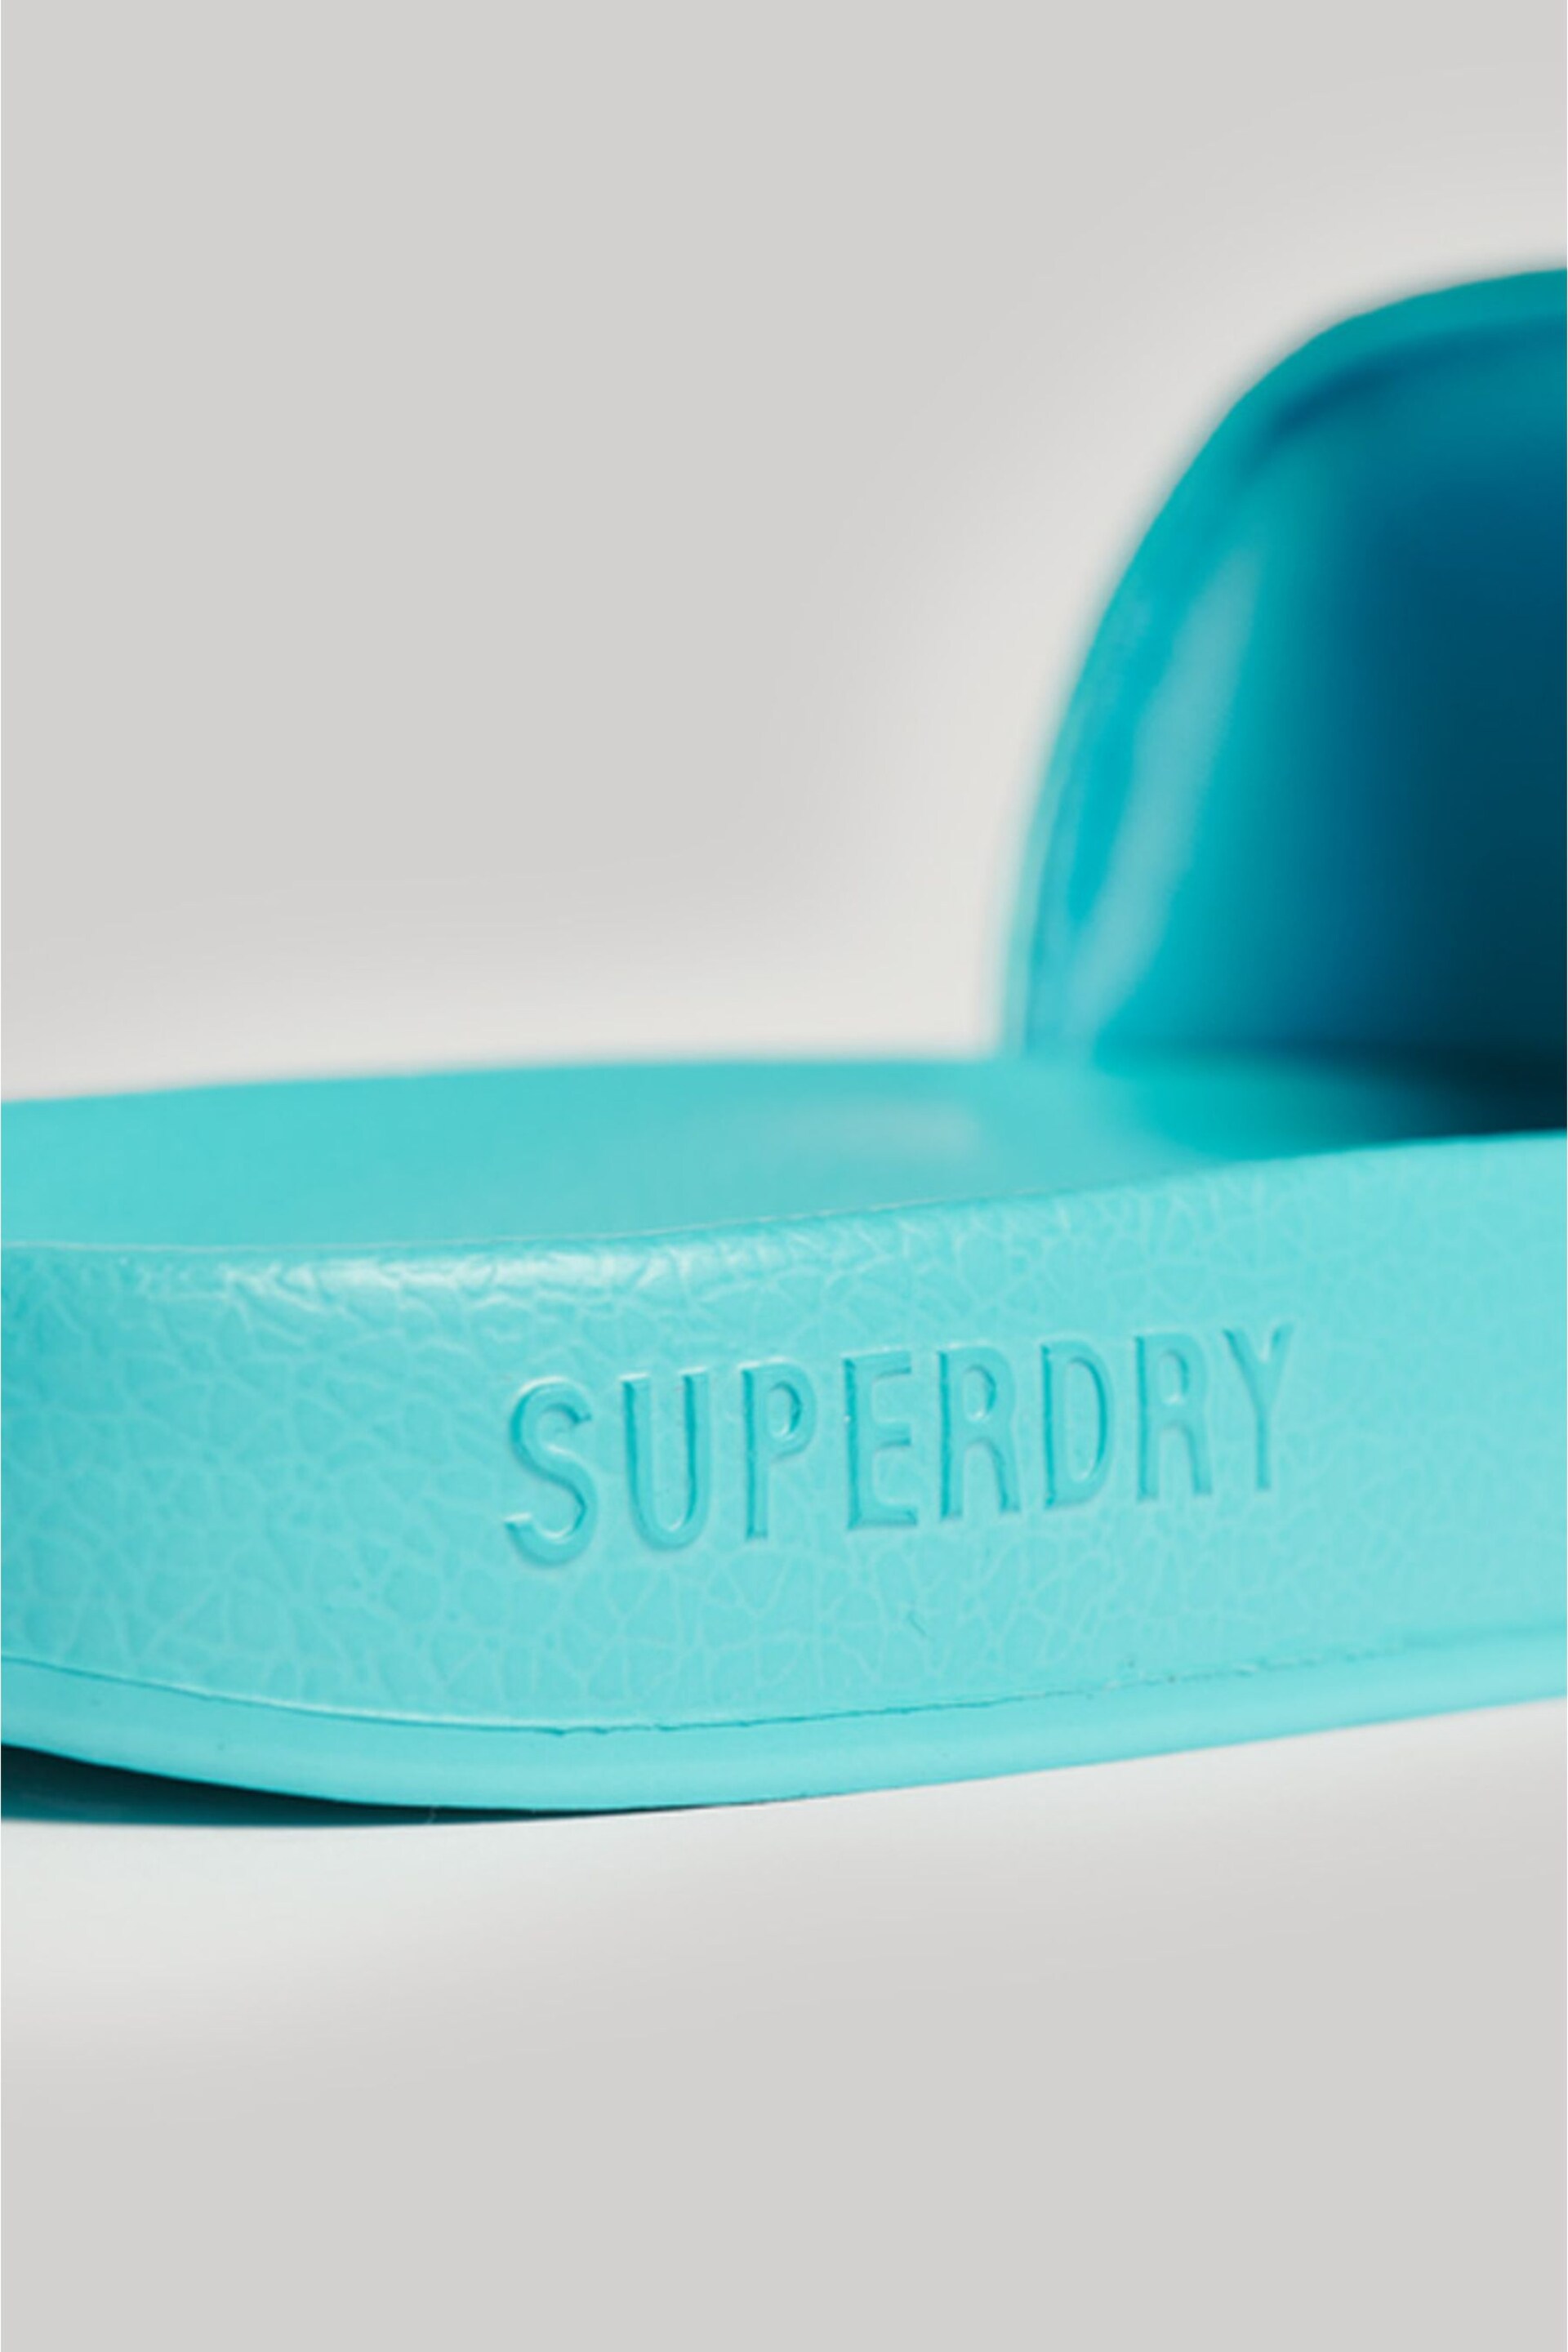 Superdry Blue Core Vegan Pool Sliders - Image 5 of 5